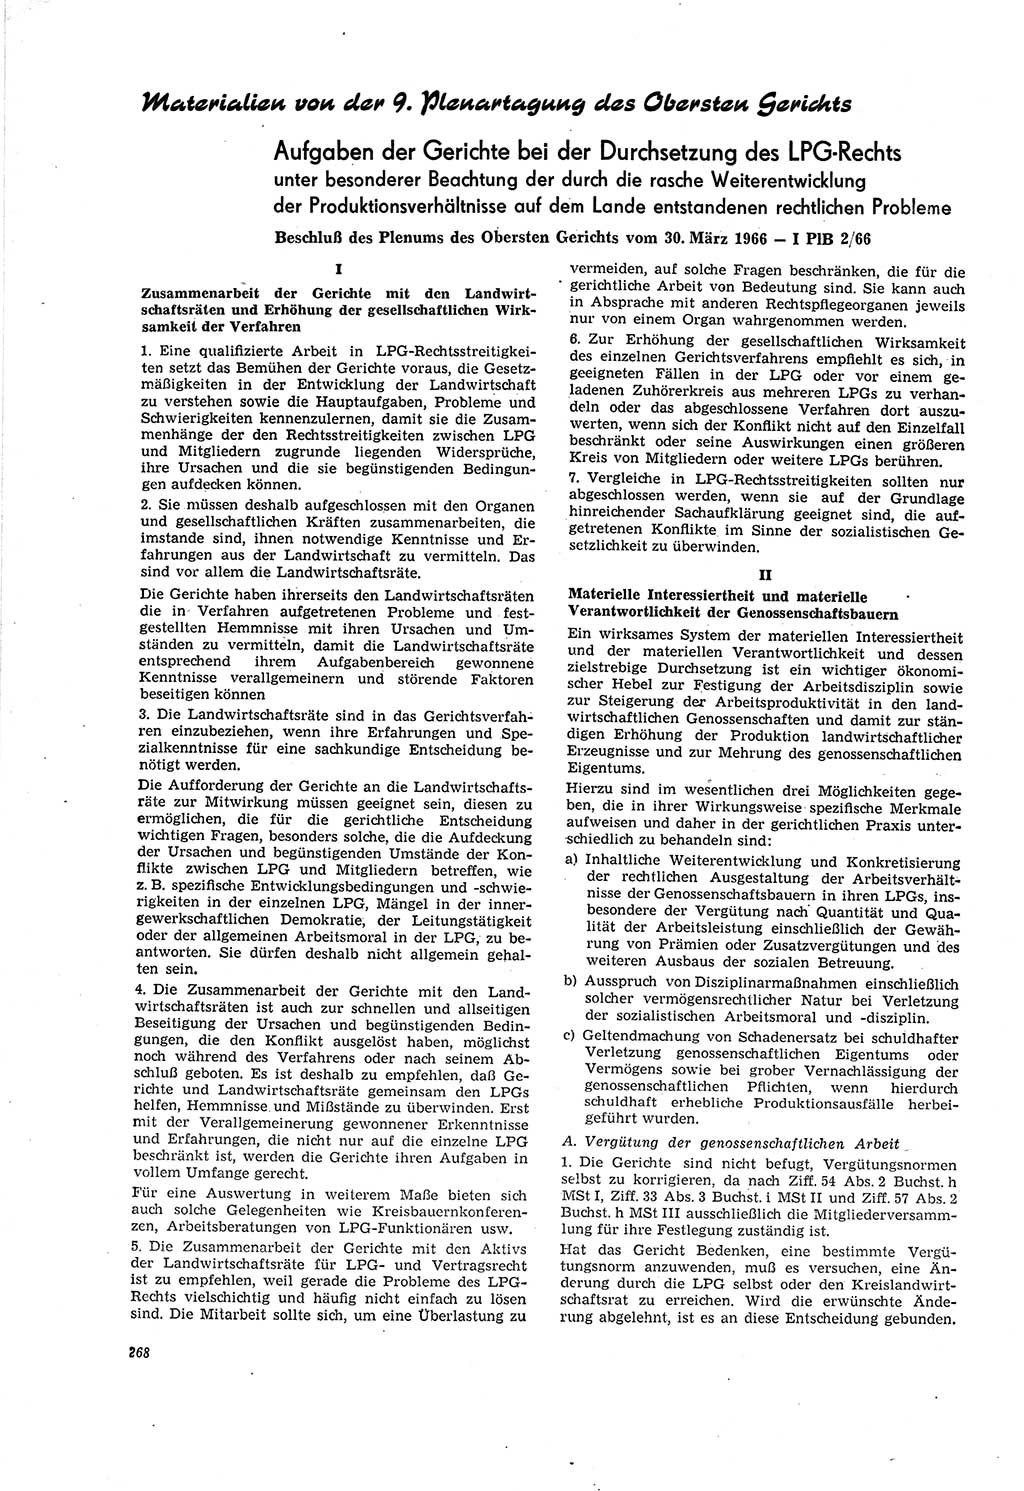 Neue Justiz (NJ), Zeitschrift für Recht und Rechtswissenschaft [Deutsche Demokratische Republik (DDR)], 20. Jahrgang 1966, Seite 268 (NJ DDR 1966, S. 268)